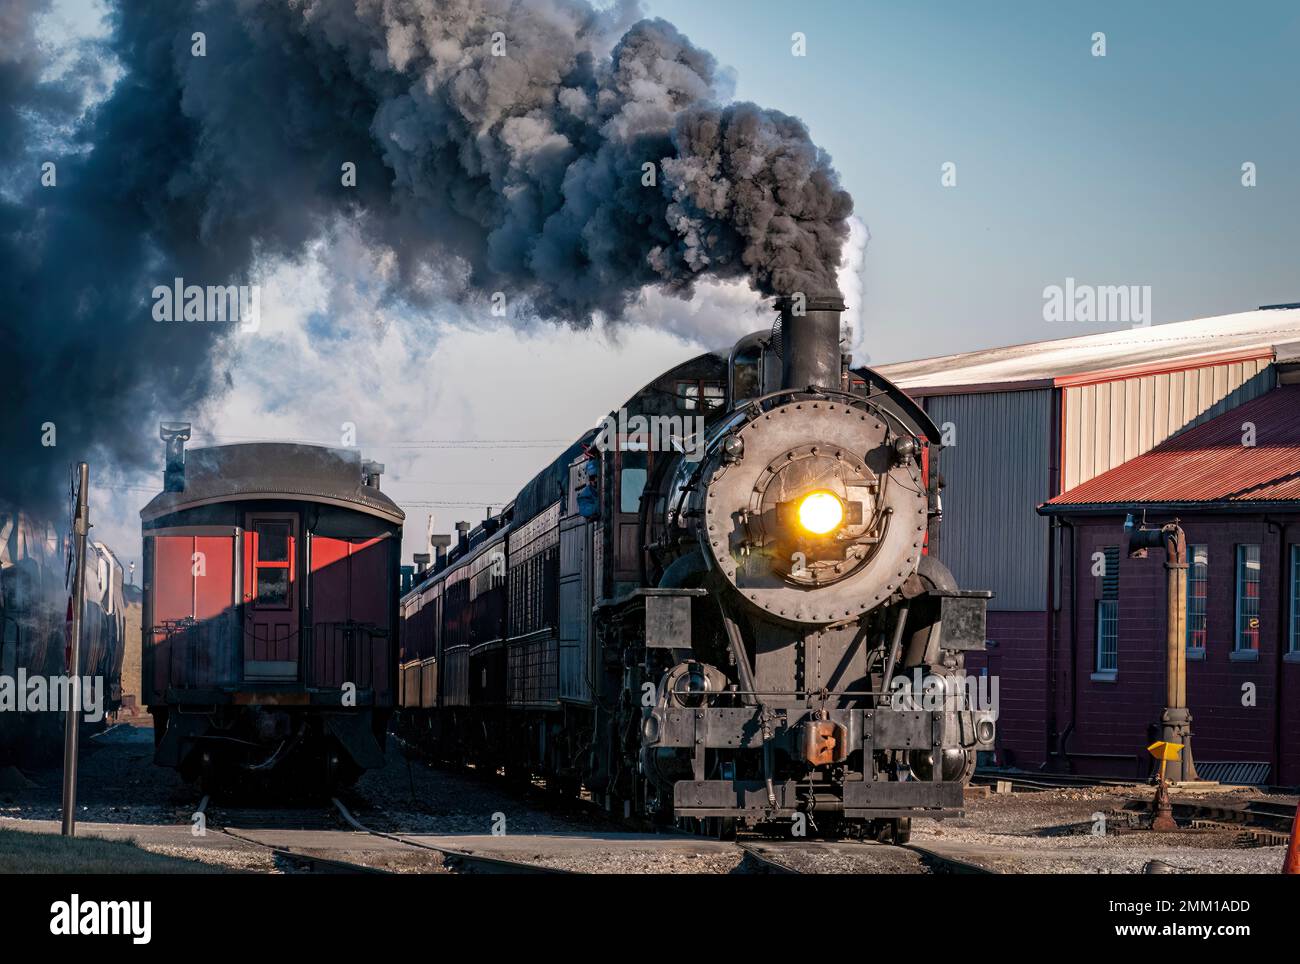 Strasburg, Pennsylvanie, 28 décembre 2022 - Vue sur un train de voyageurs à vapeur classique arrivant dans une gare qui soufflait de fumée et de vapeur, le jour d'hiver Banque D'Images